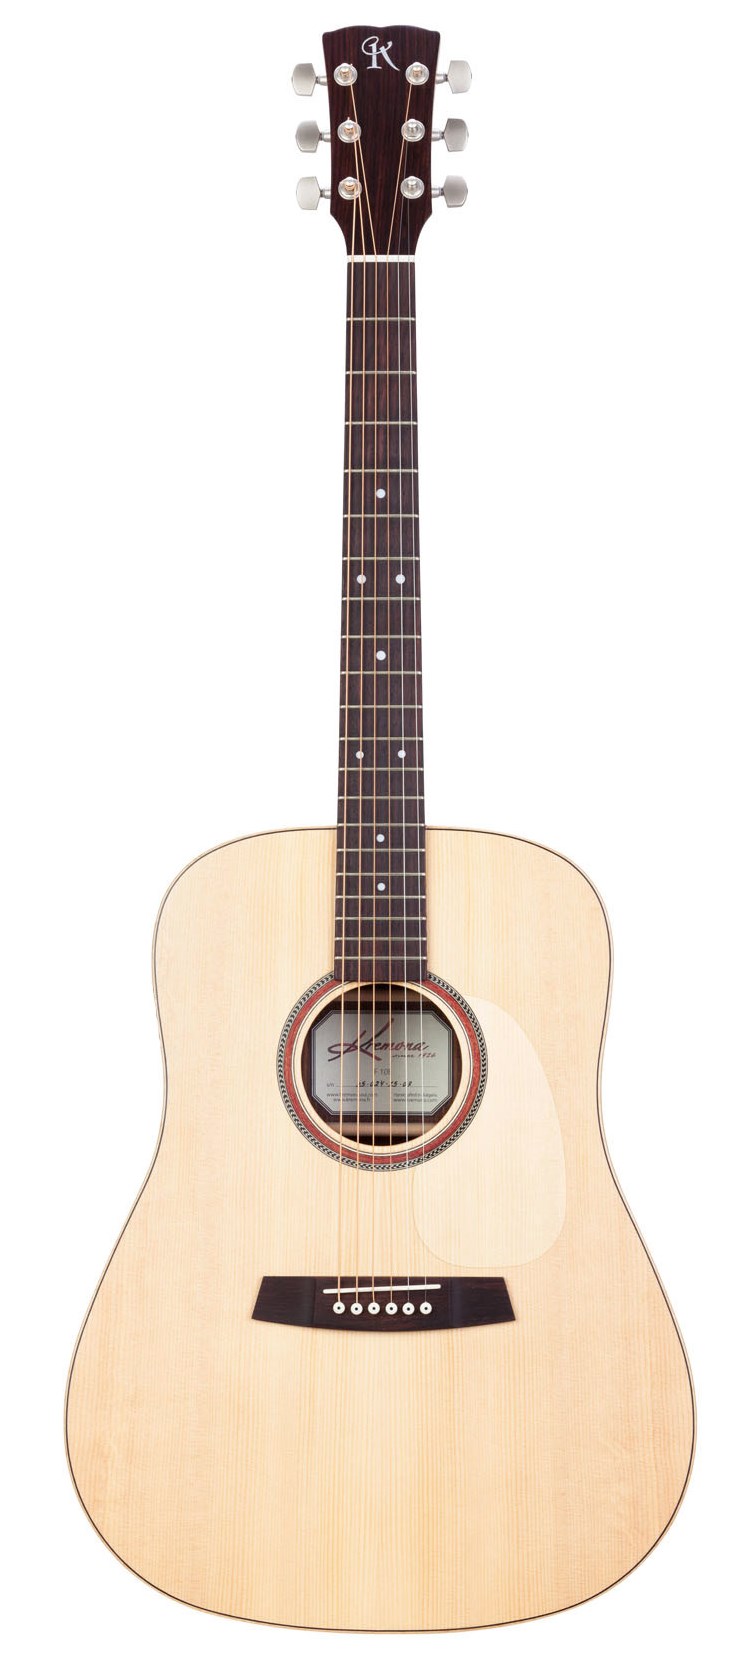 Акустические гитары Kremona F10C Steel String Series 38 дюймовая классическая акустическая гитара 6 струнная деревянная гитара для начинающих студентов